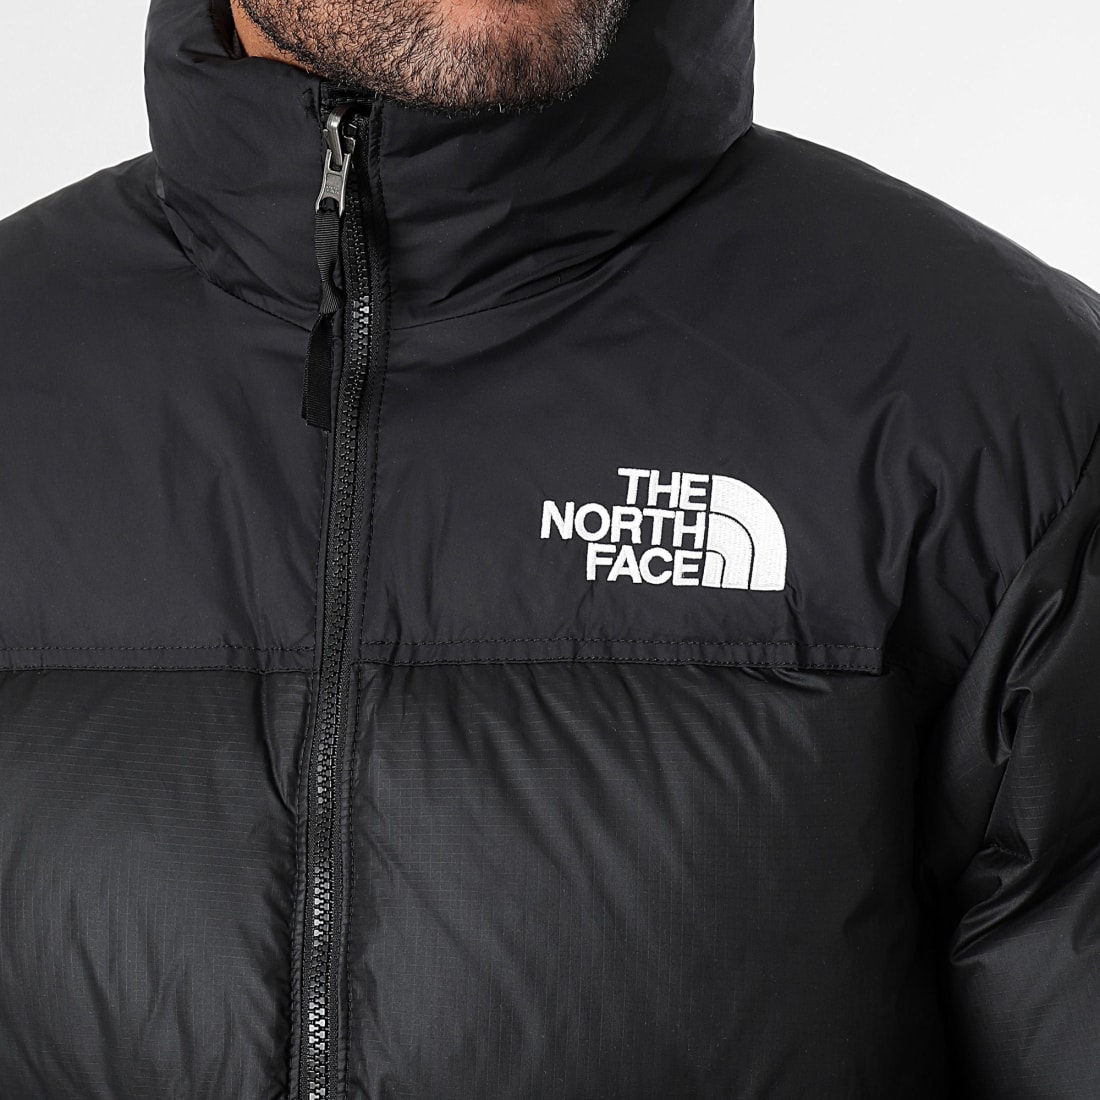 Vêtement Doudounes The North Face homme 1996 Retro Nuptse Jacket taille Noir